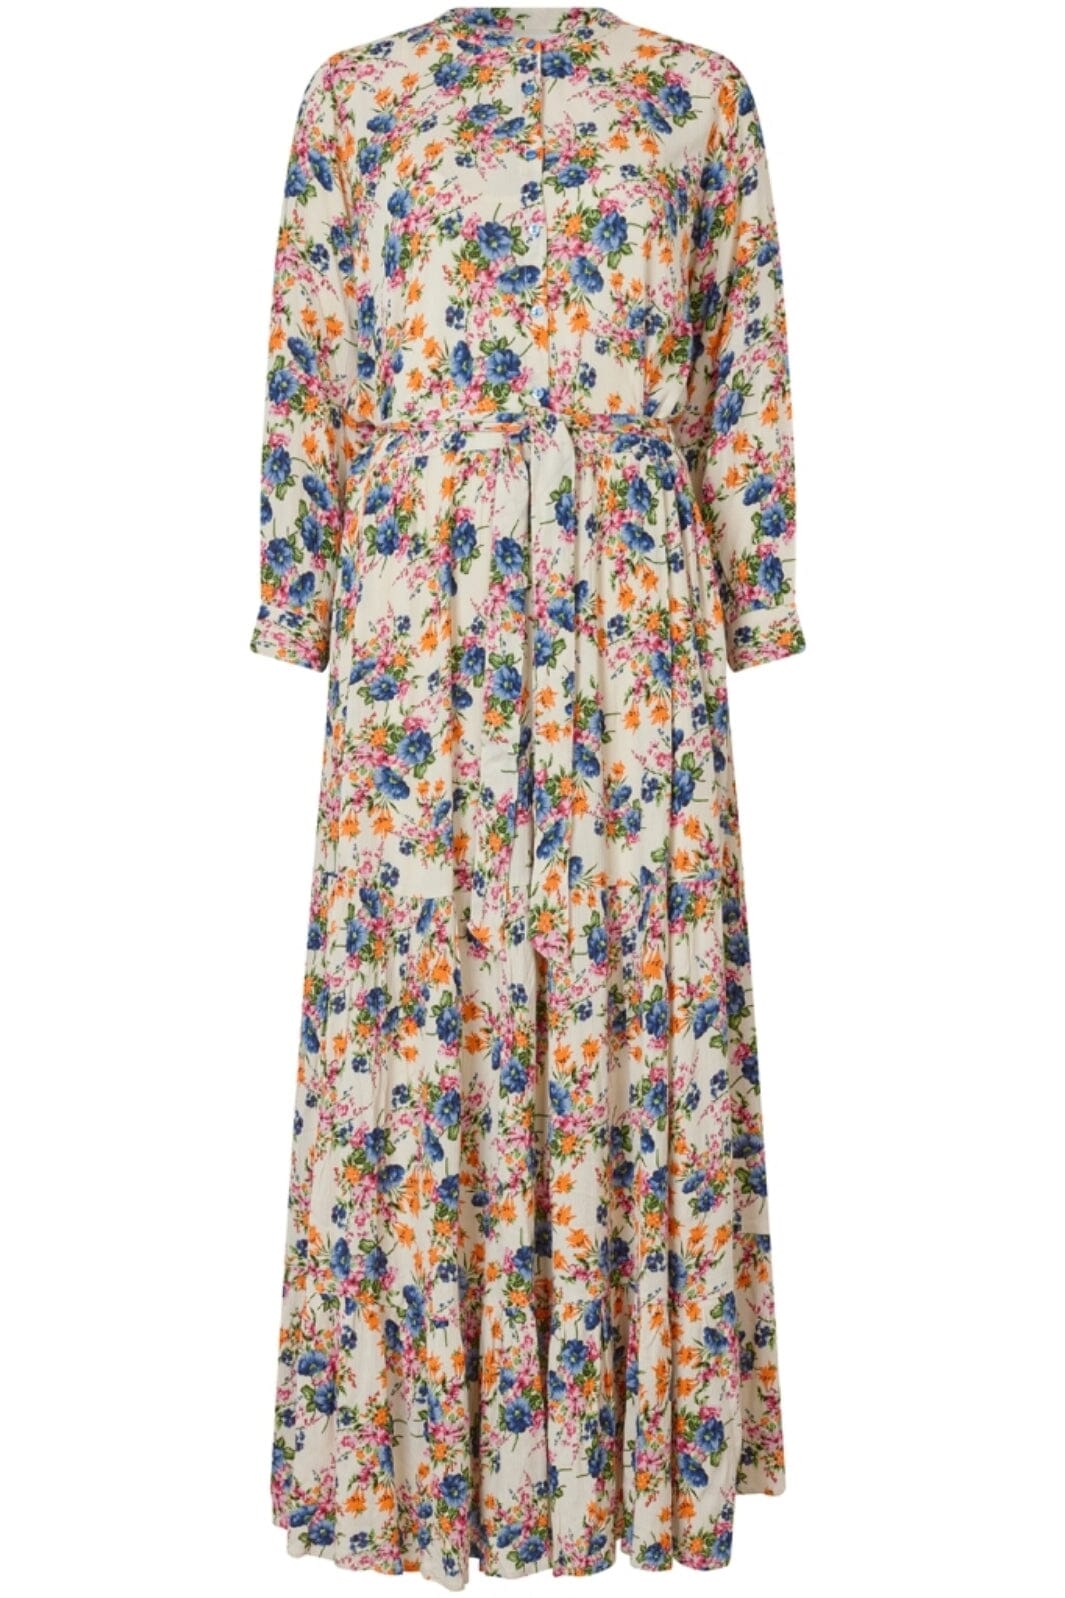 Lollys Laundry - NeeLL Dress 3/4 - 74 Flower Print Kjoler 